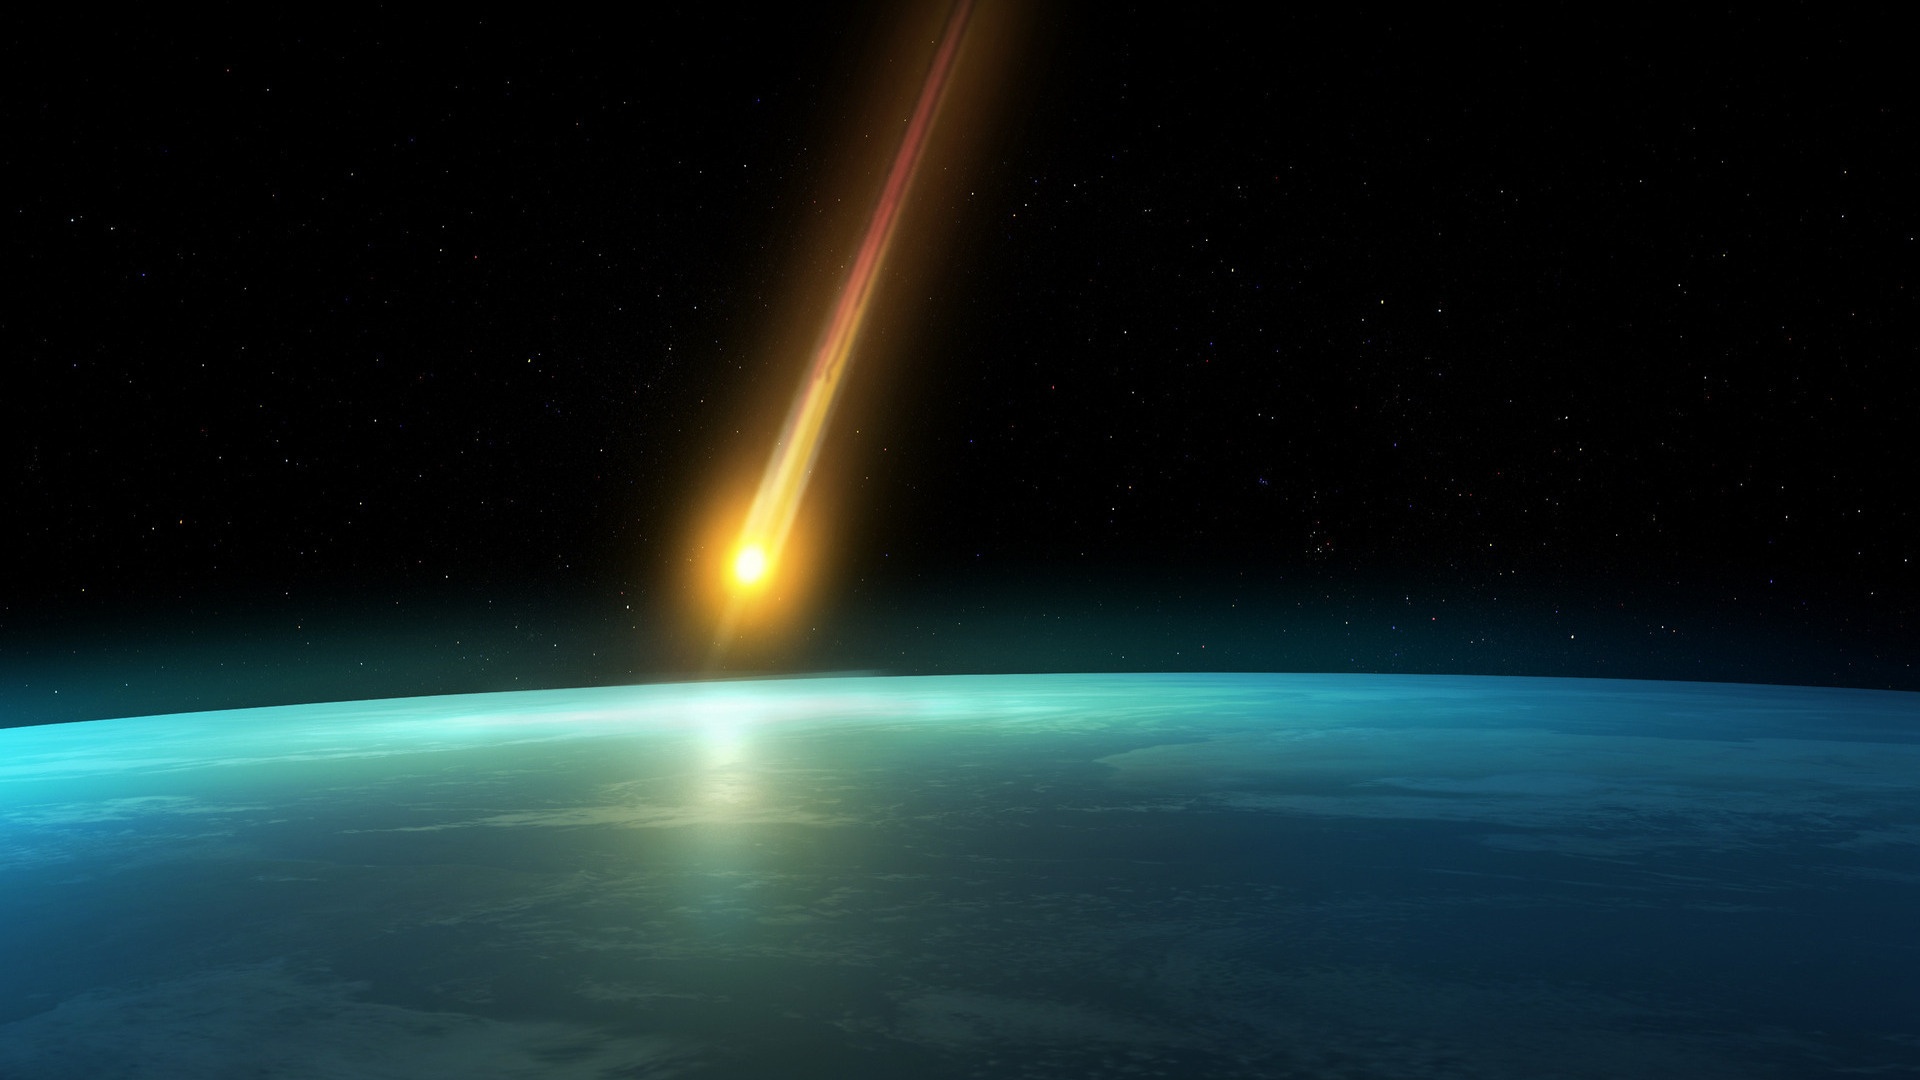 Обои Земли комета картинки на рабочий стол на тему Космос - скачать бесплатно